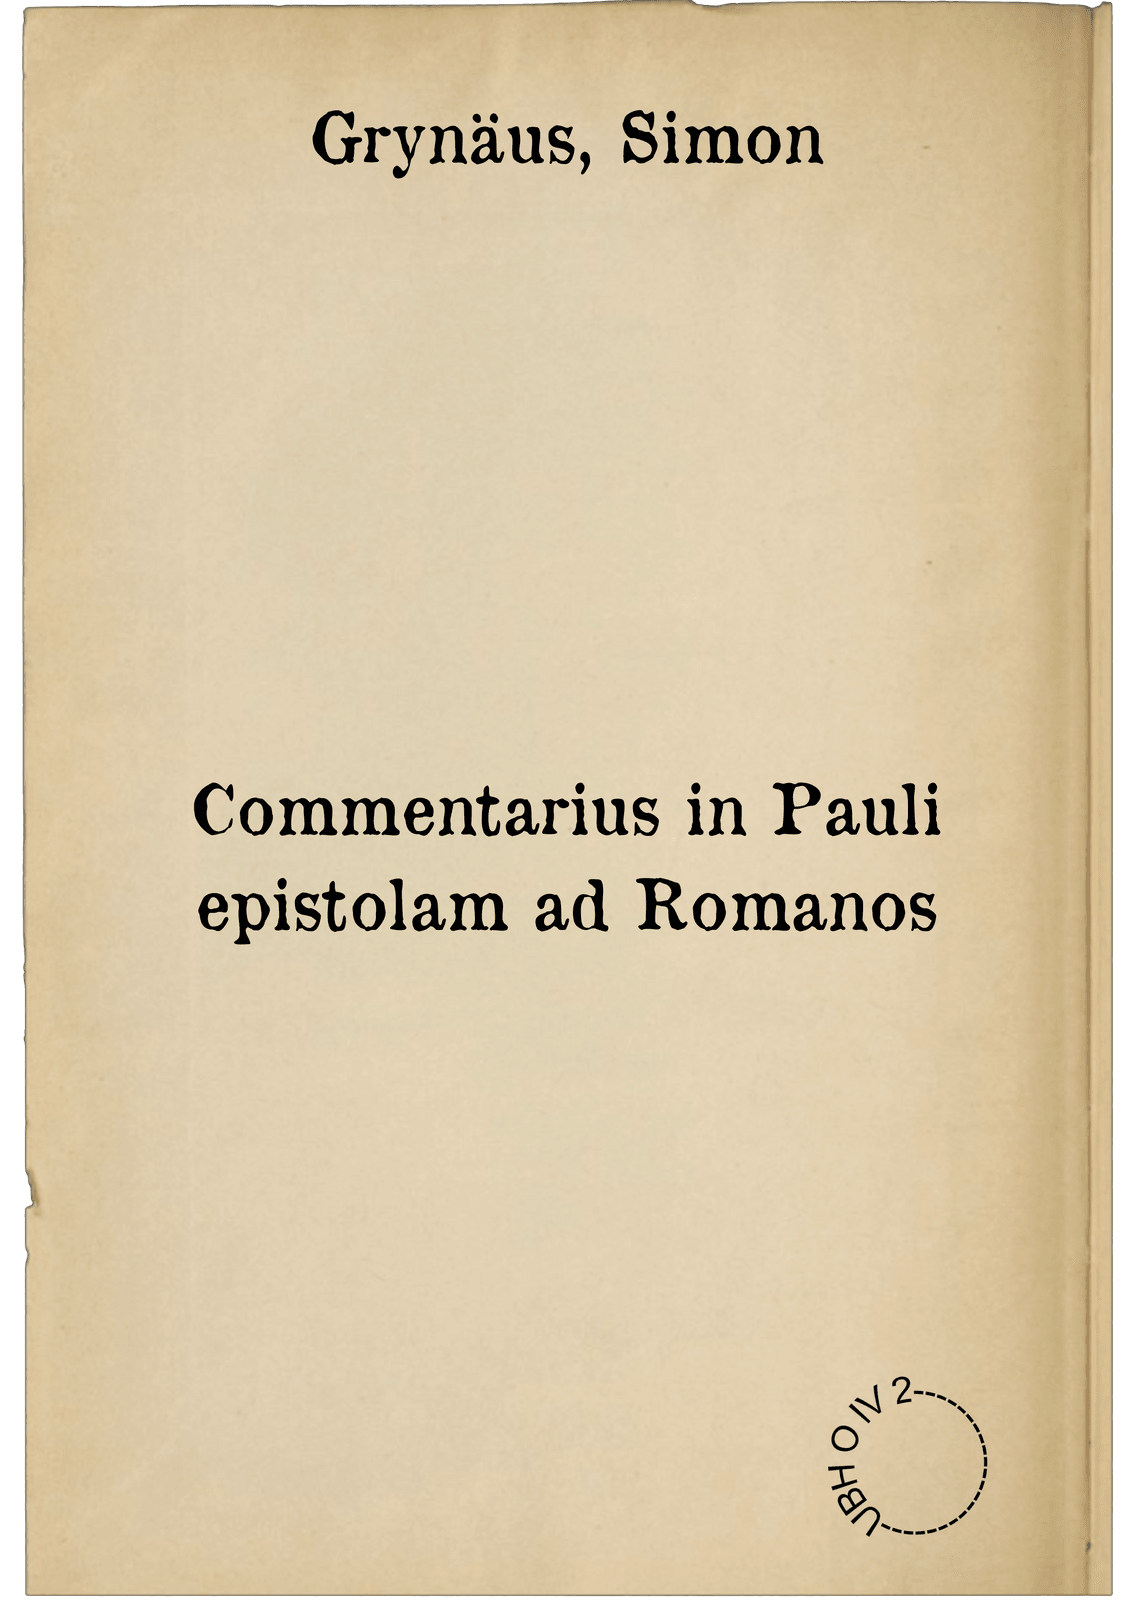 Commentarius in Pauli epistolam ad Romanos